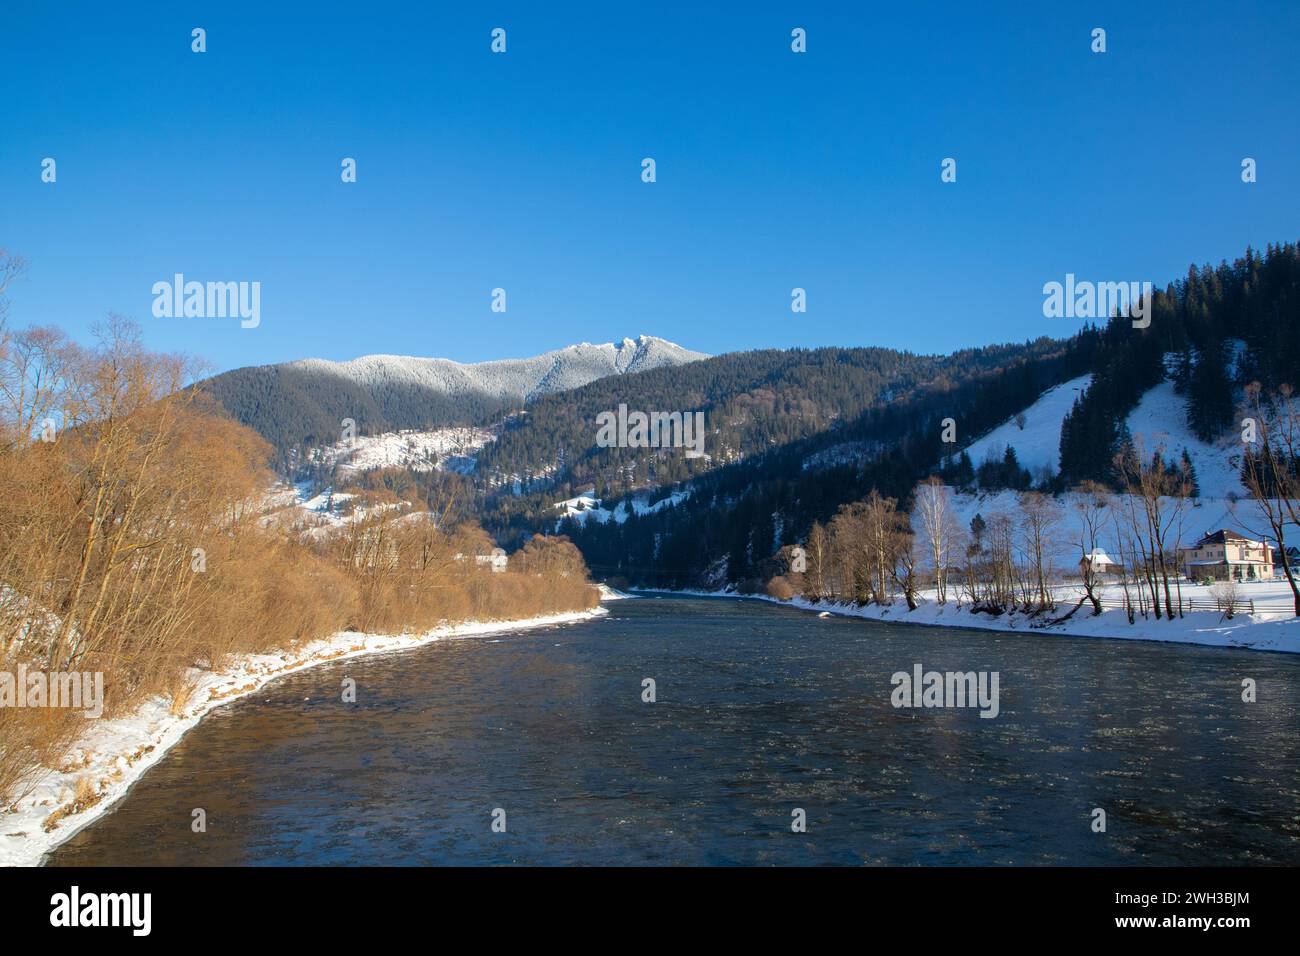 Río que fluye a través del paisaje nevado con árboles y montañas en el telón de fondo Foto de stock